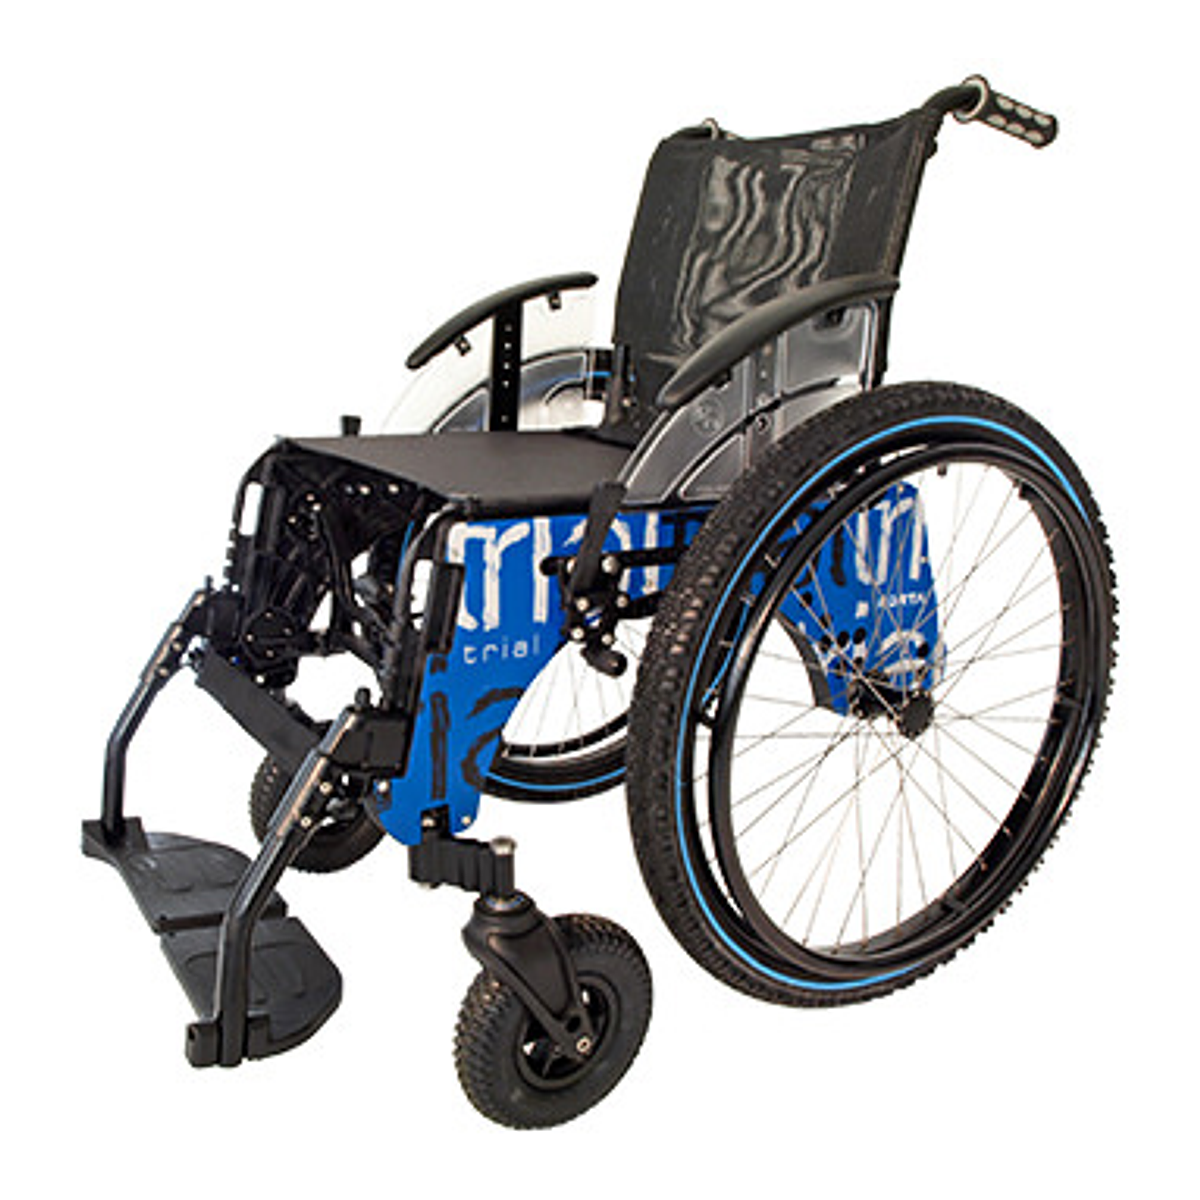 Cadeira de Rodas TRIAL PLAYA - Ideal para a praia